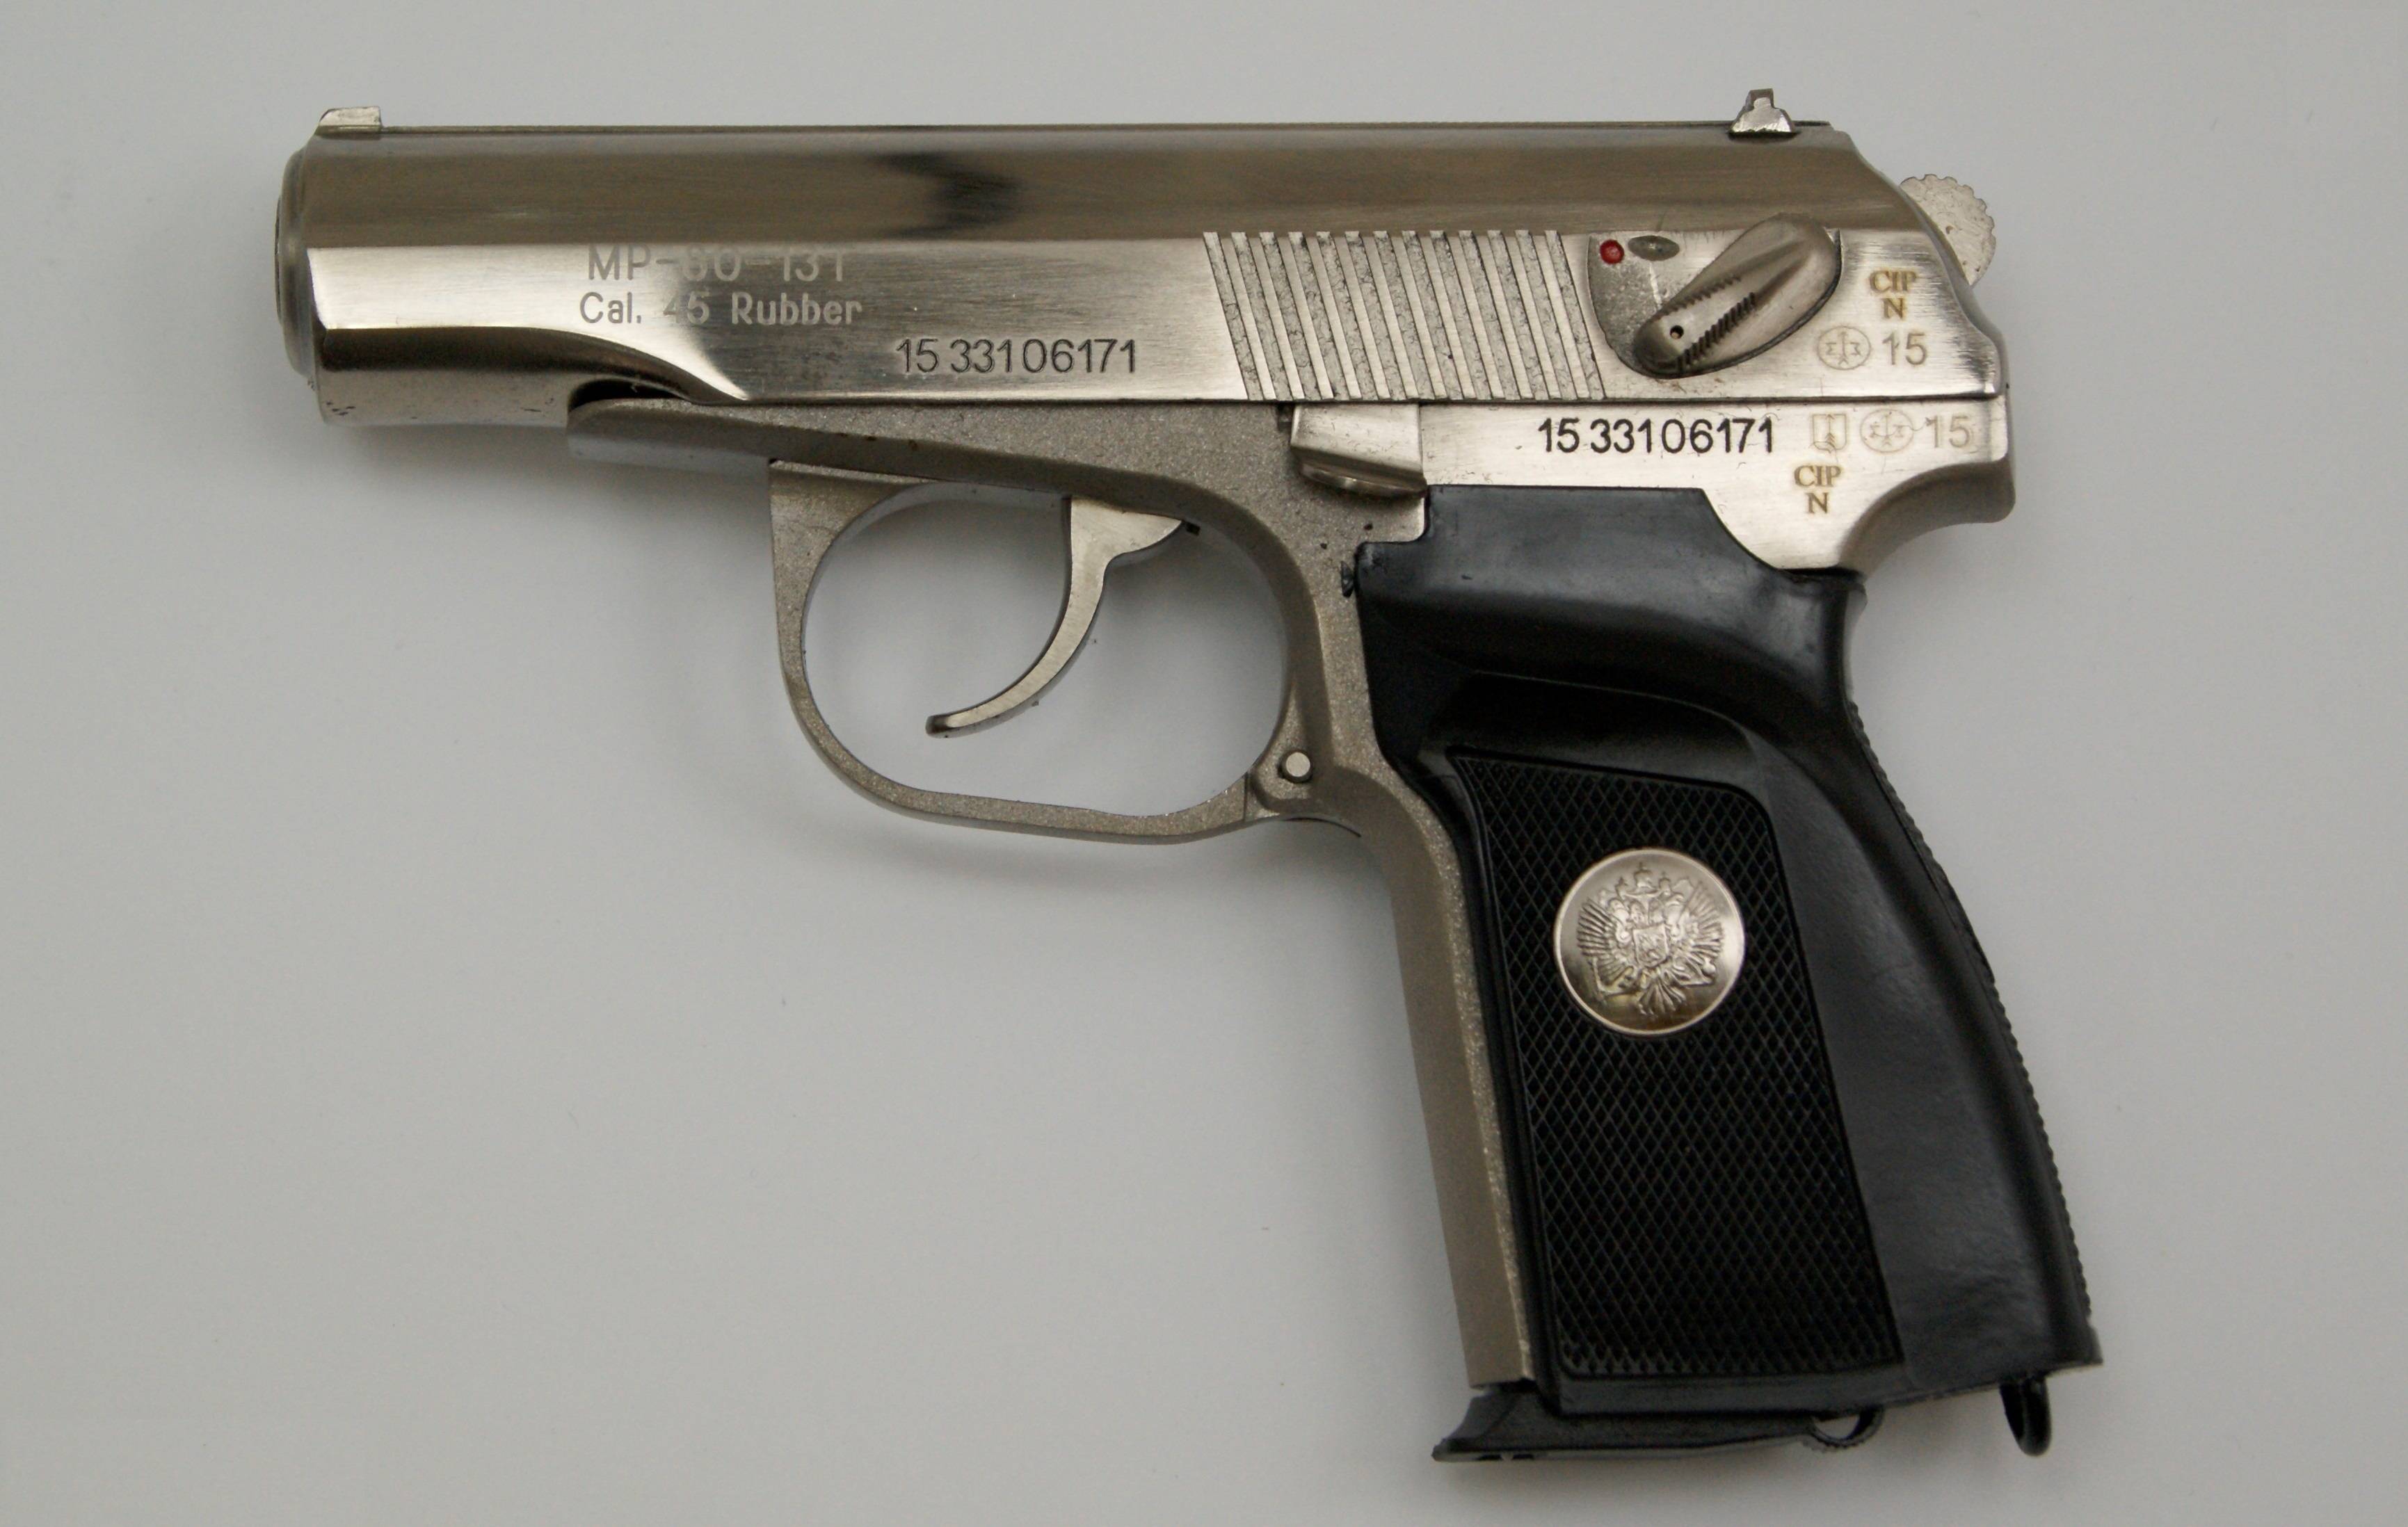 Травматический пистолет, какой самый мощный и лучший, обзор и характеристики, каталог моделей с калибром 9 мм, рейтинг оружия